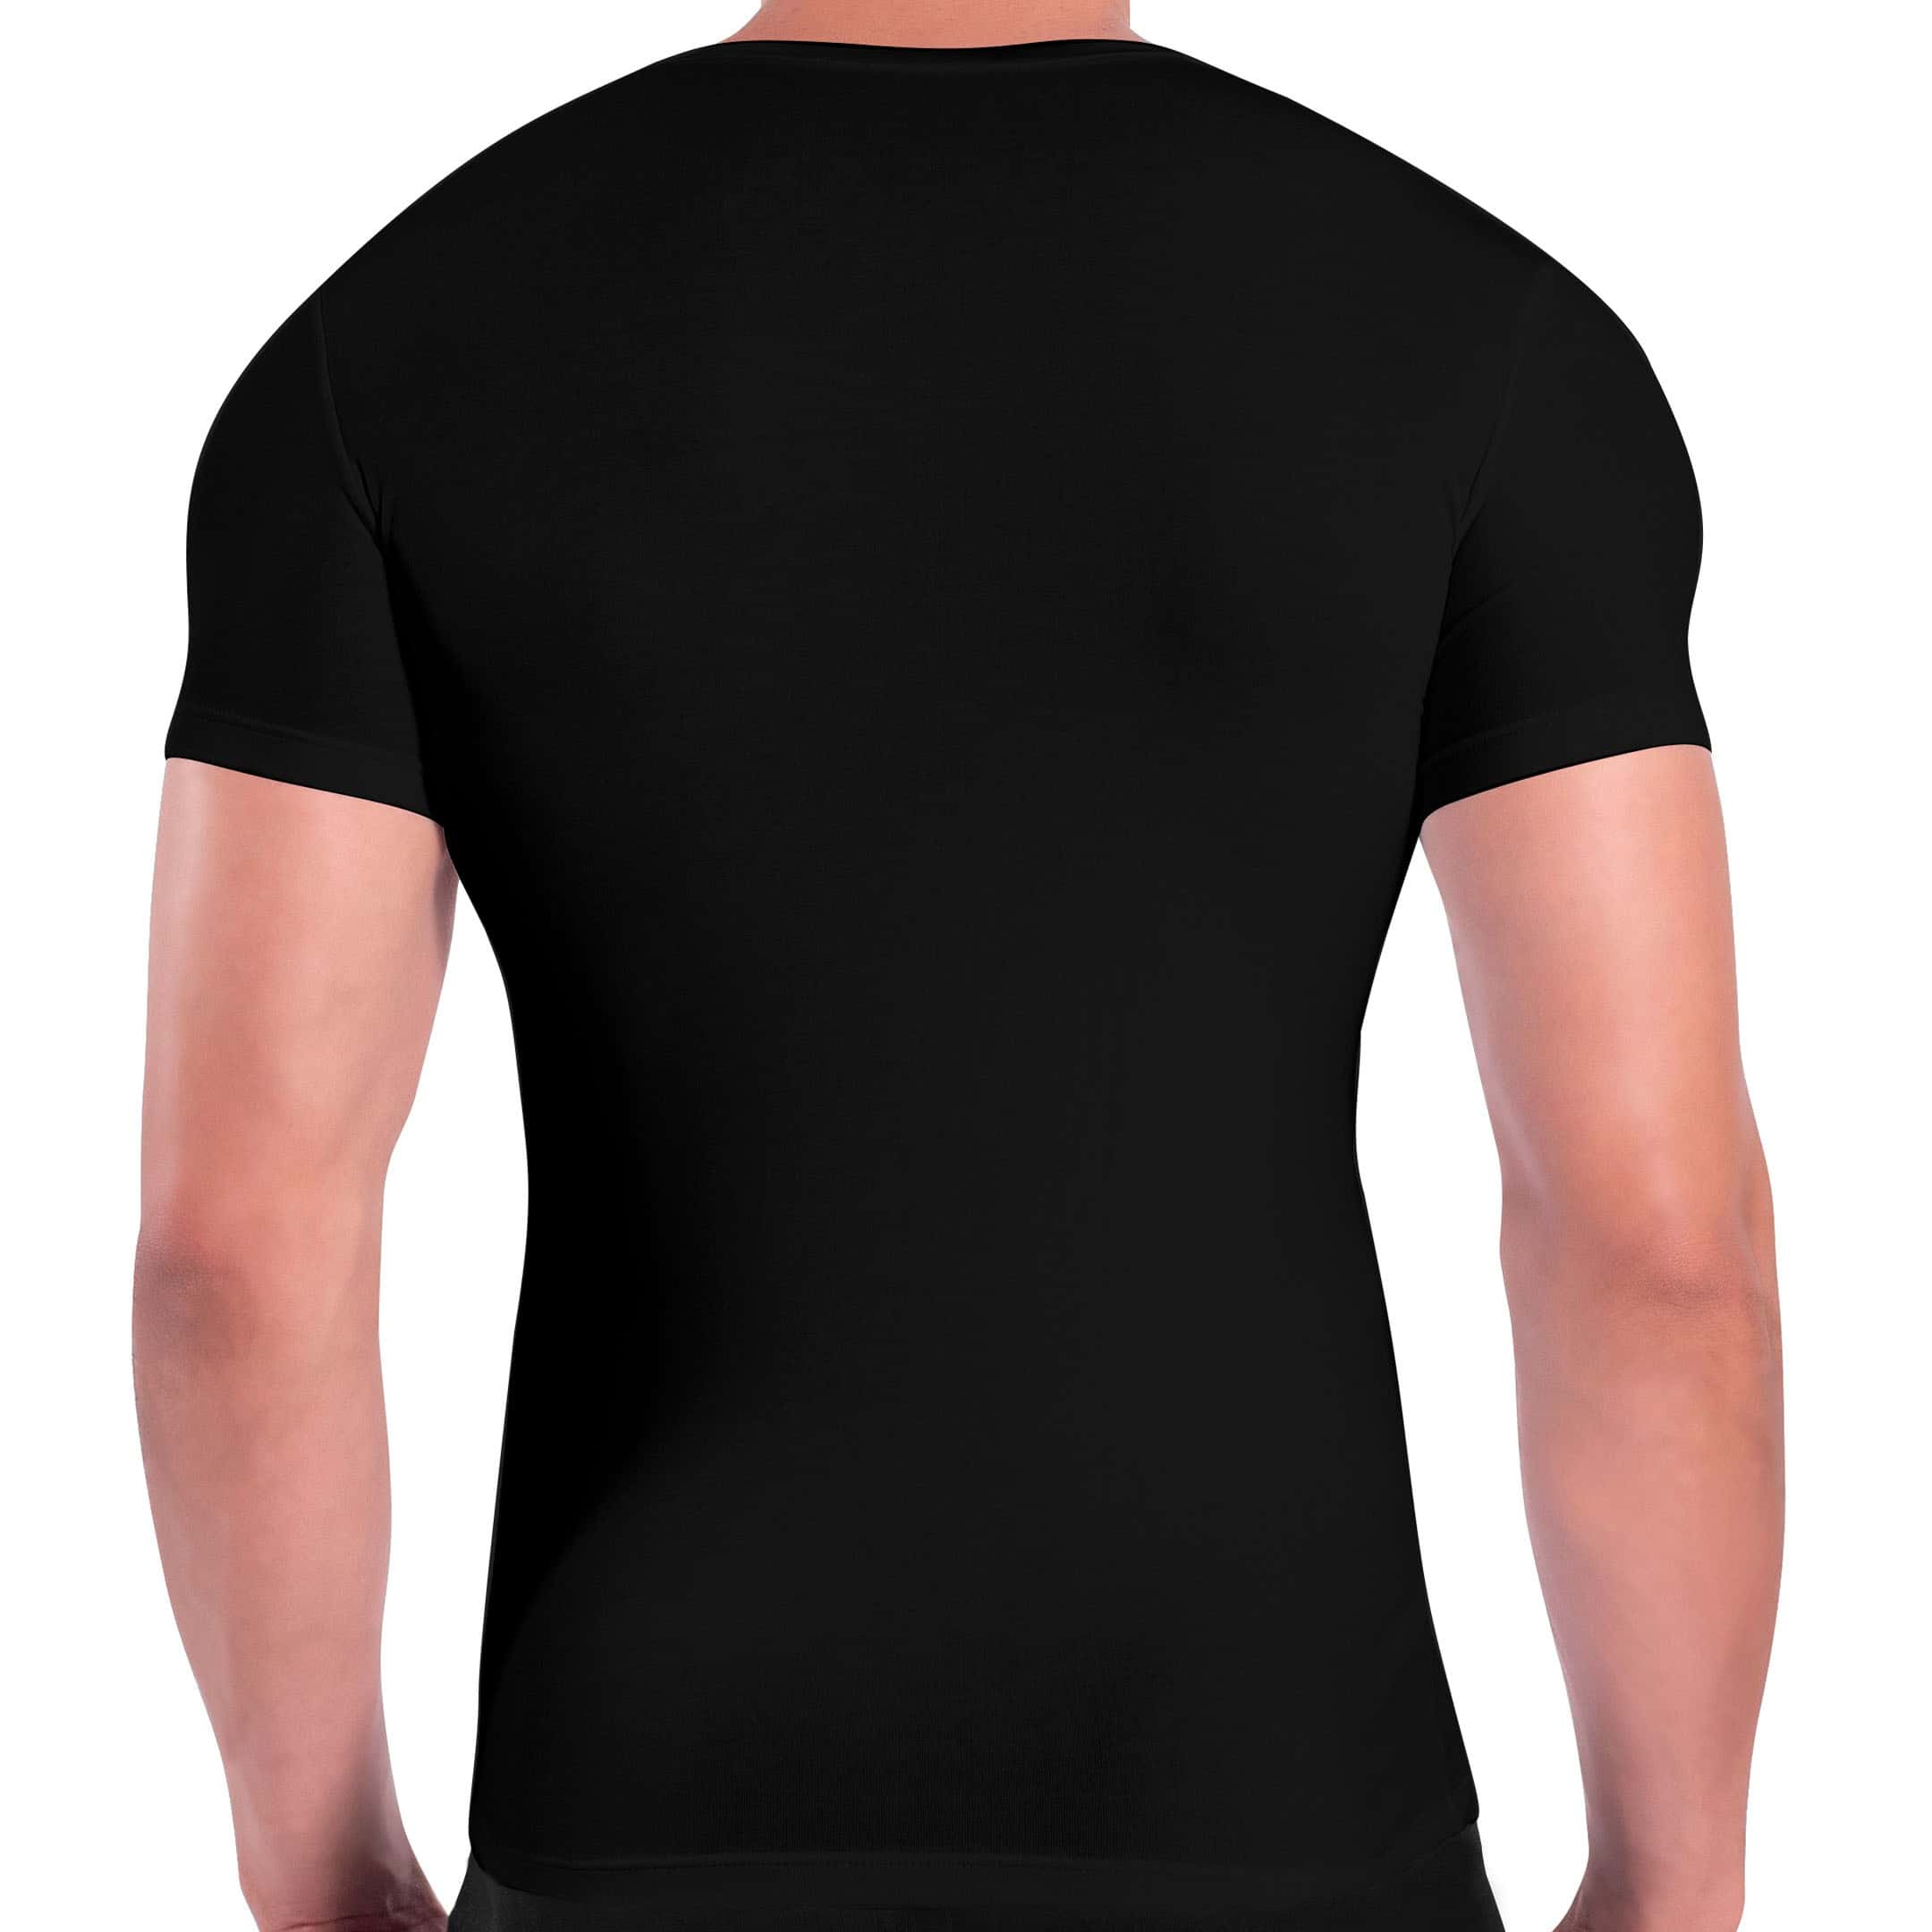 Rounderbum Deep V Cotton Compression T-Shirt - Black